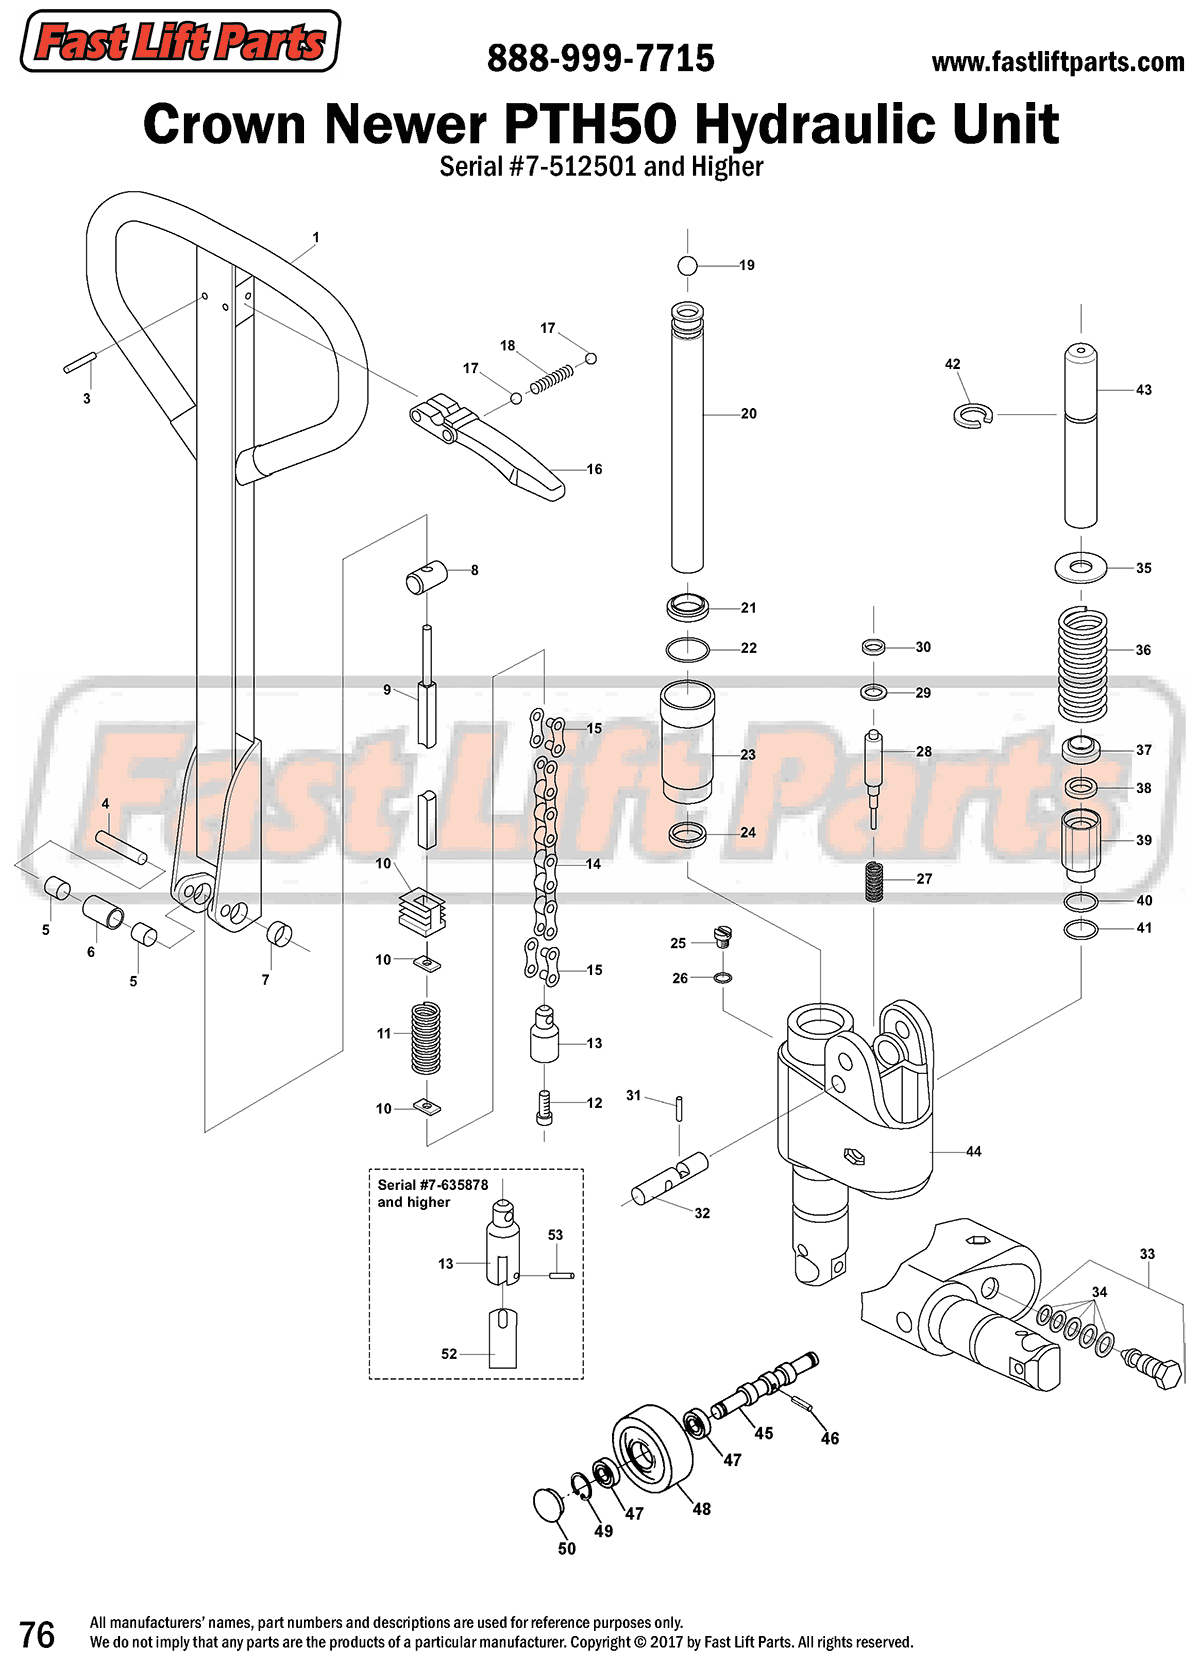 Crown Newer PTH 50 Hydraulic Unit Line Drawing